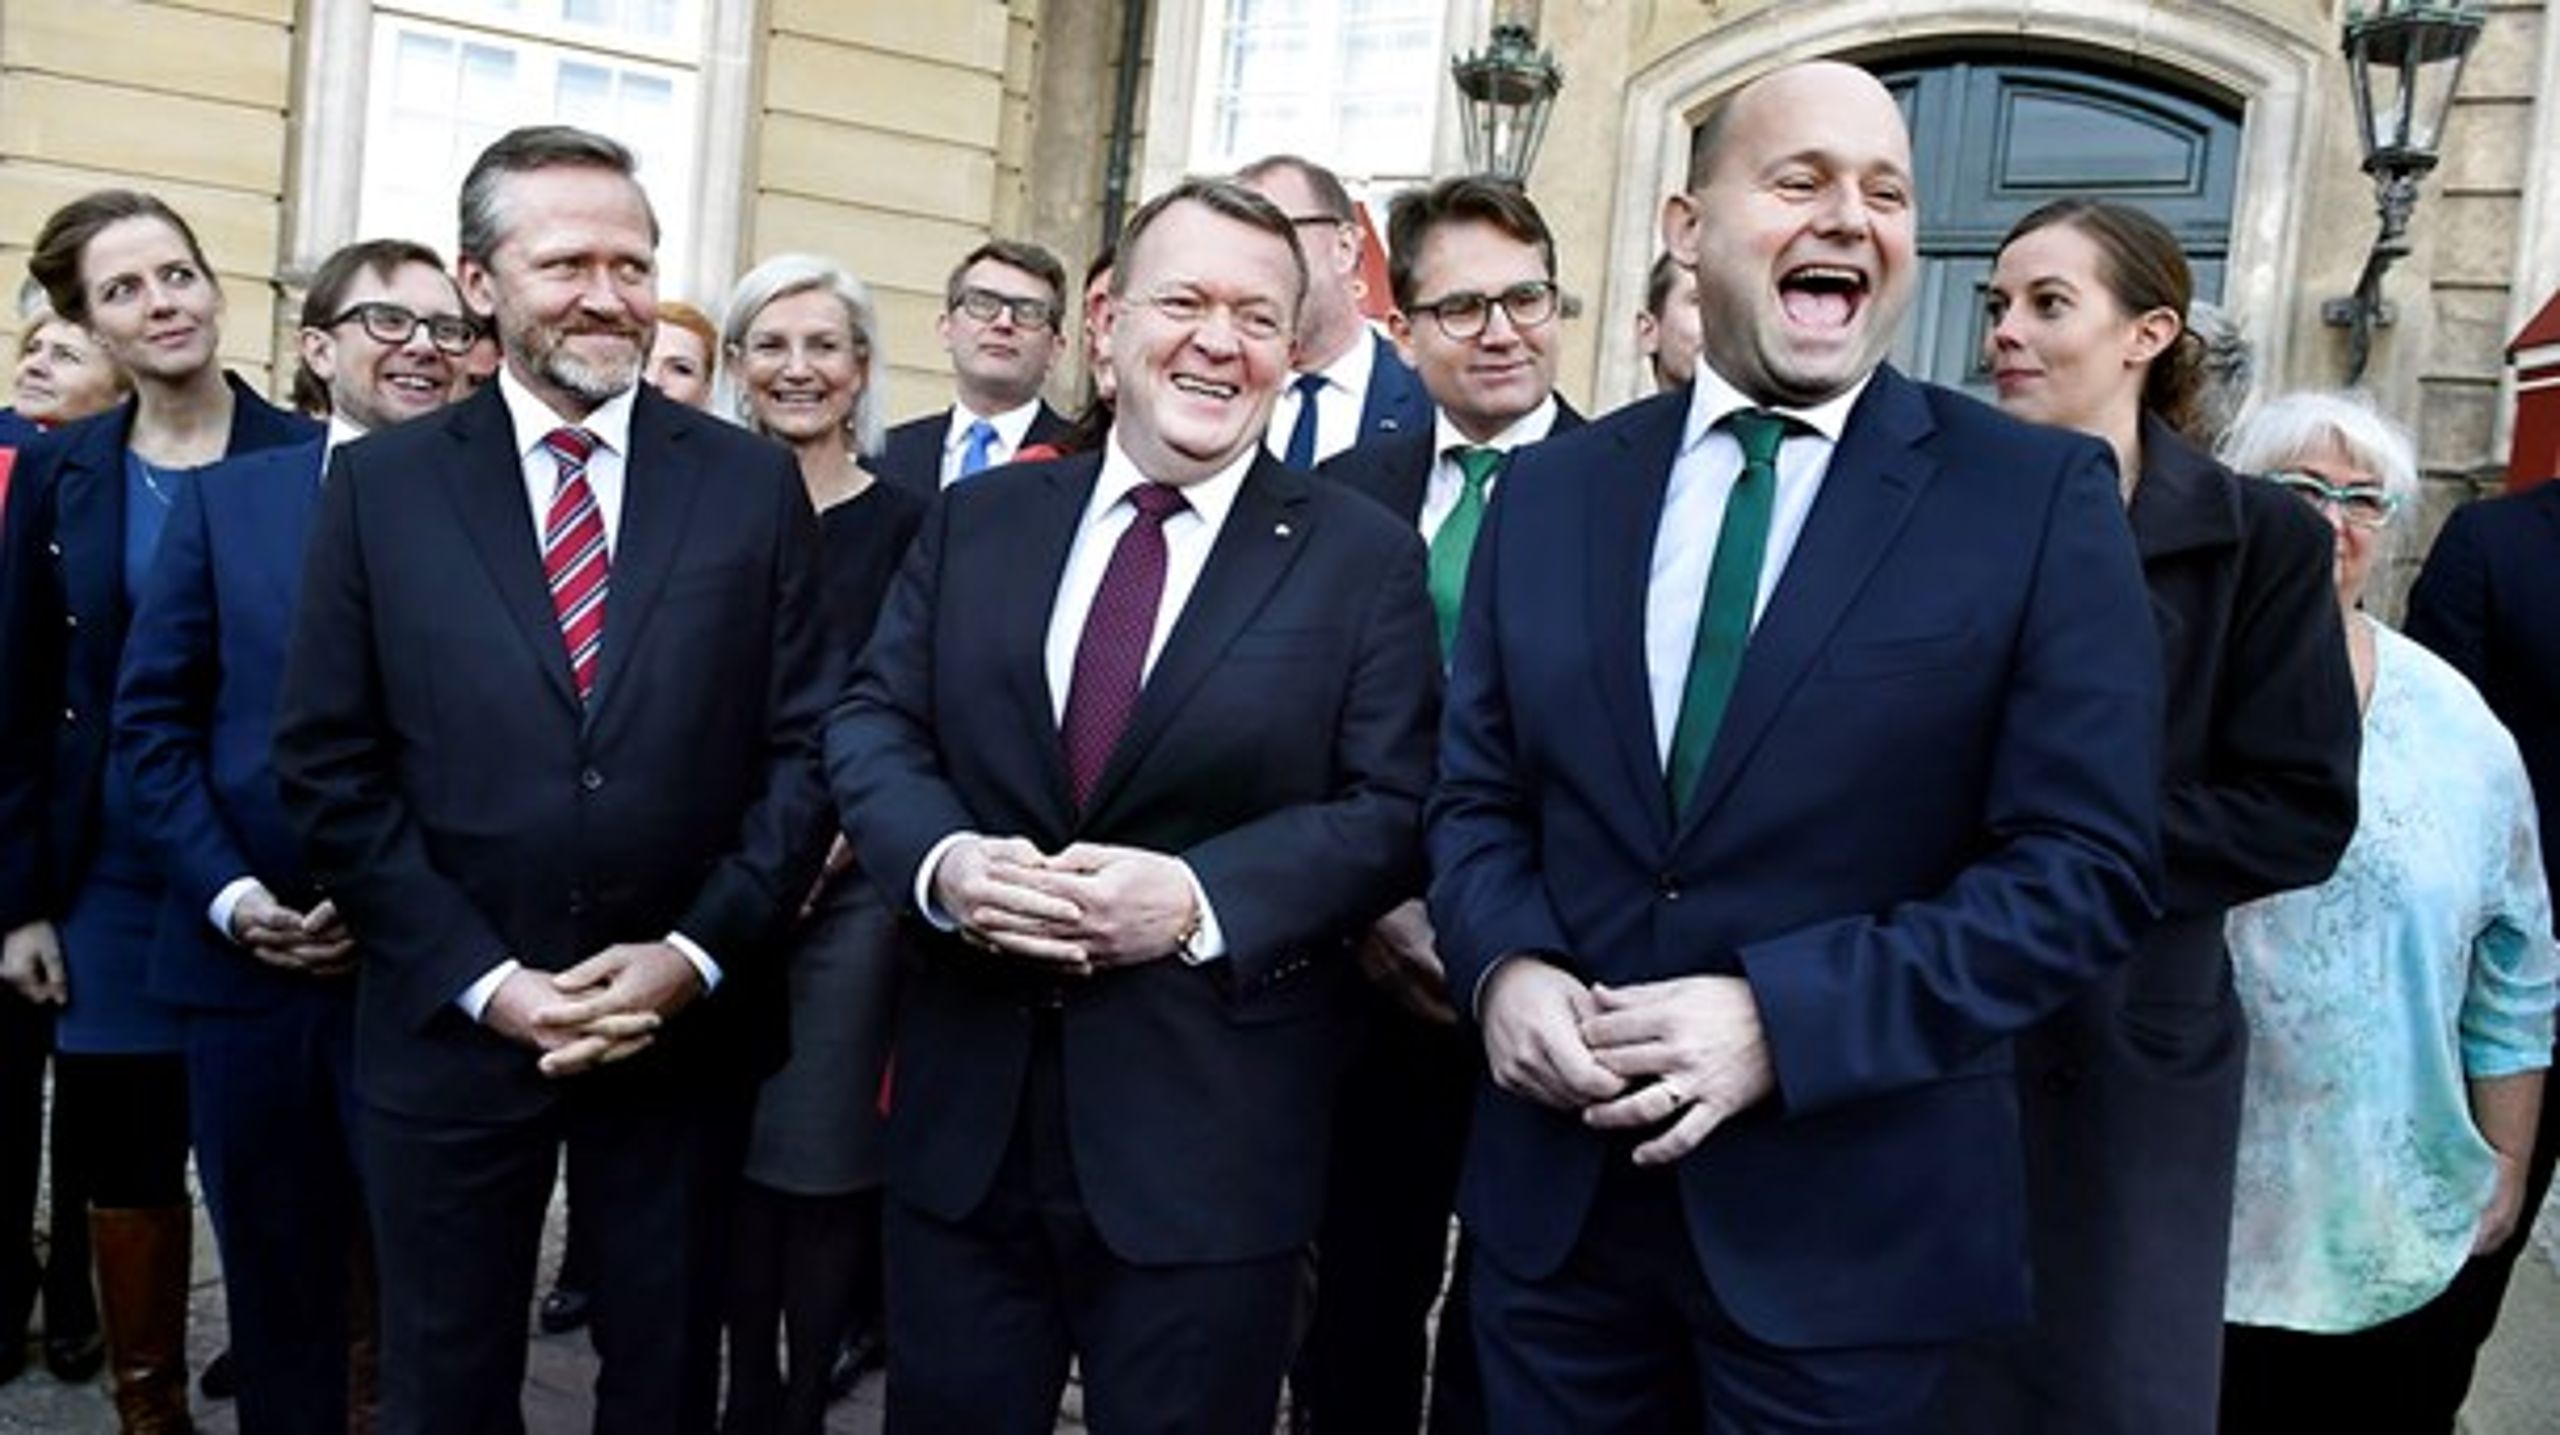 Der var store smil, da Lars Løkke Rasmussen (V) i slutningen af 2016 præsenterede sin nye og udvidede regering. Nu er der overvejelser om en ministerrokade, så der kan komme nye og friske kræfter ind.&nbsp;